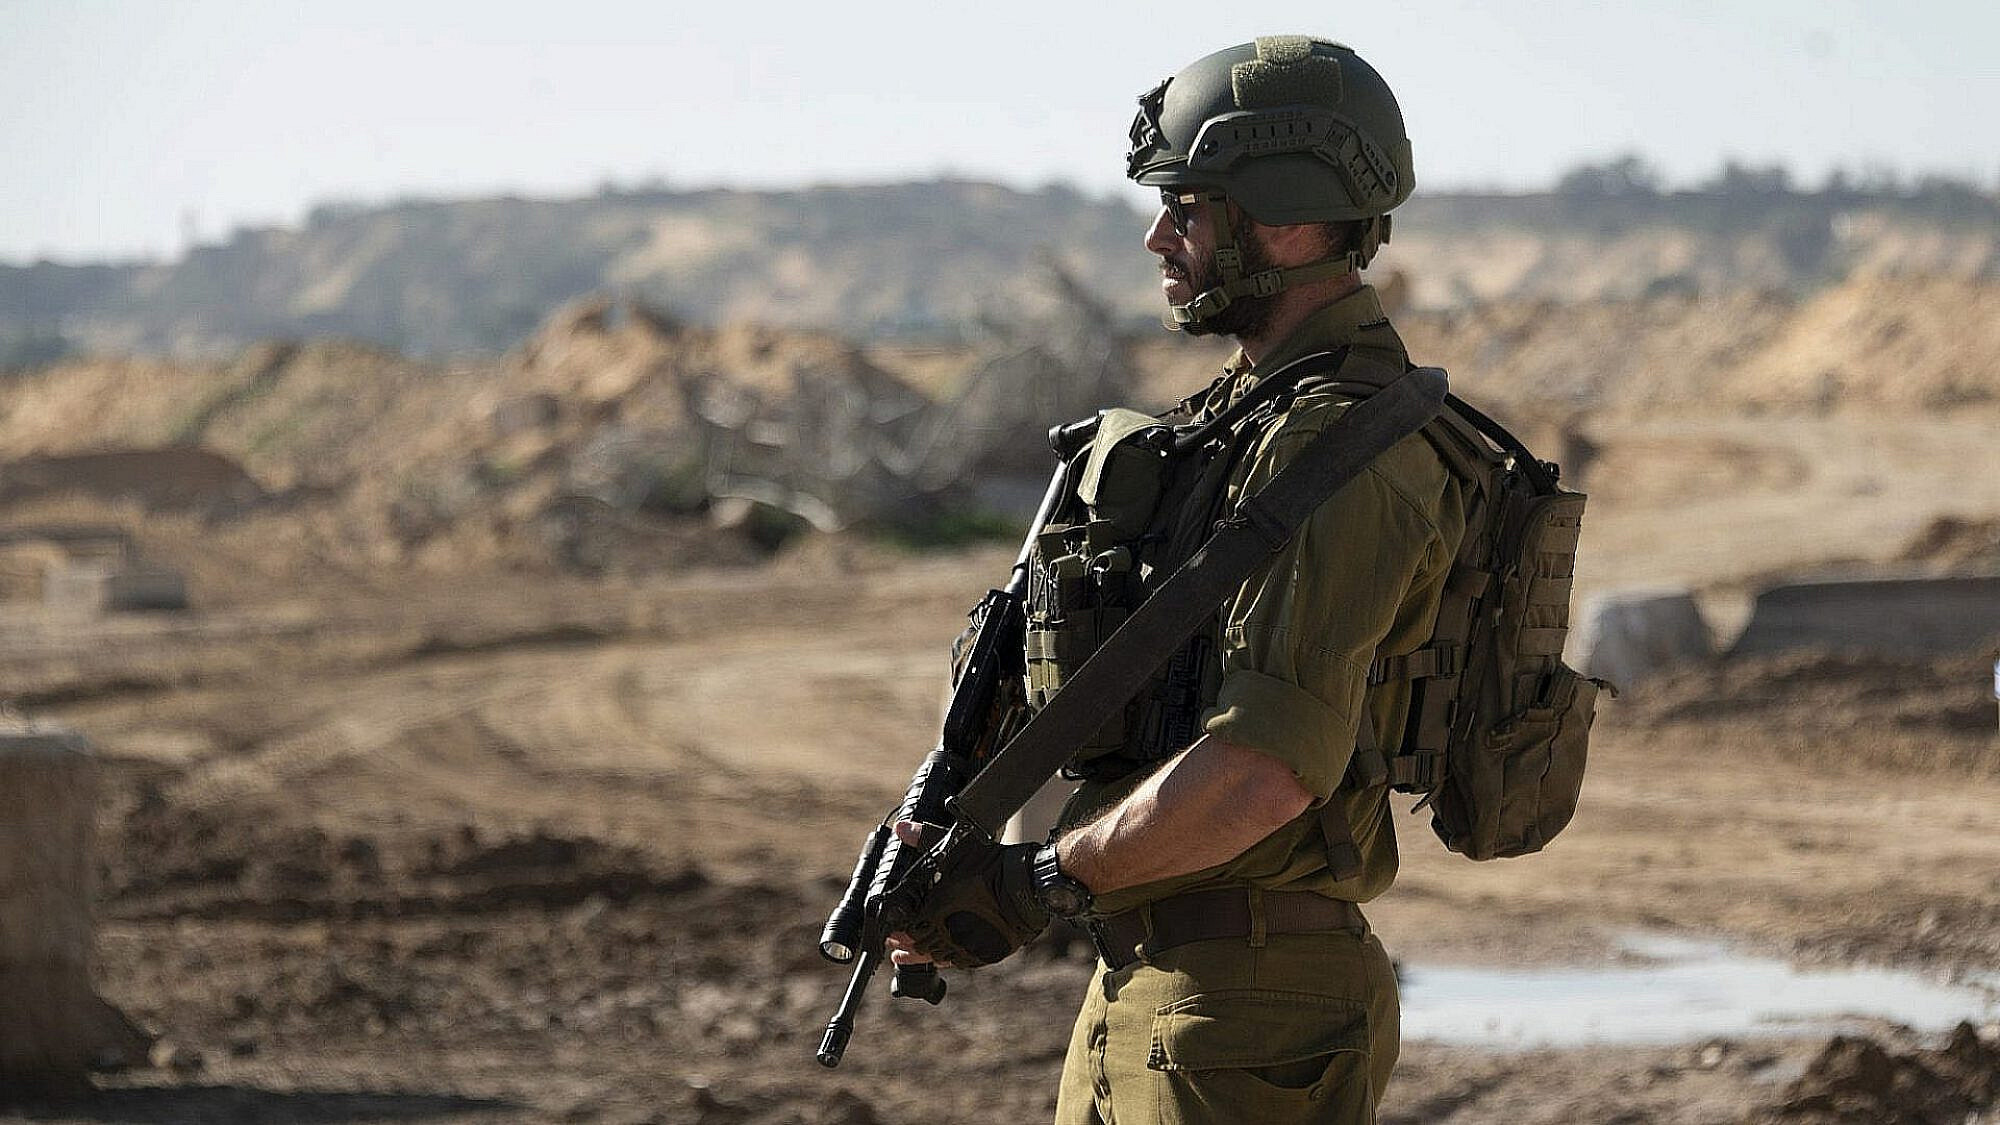 חייל צה"ל בעזה. למצולם אין קשר לכתבה | צילום: Noam Galai/Getty Images